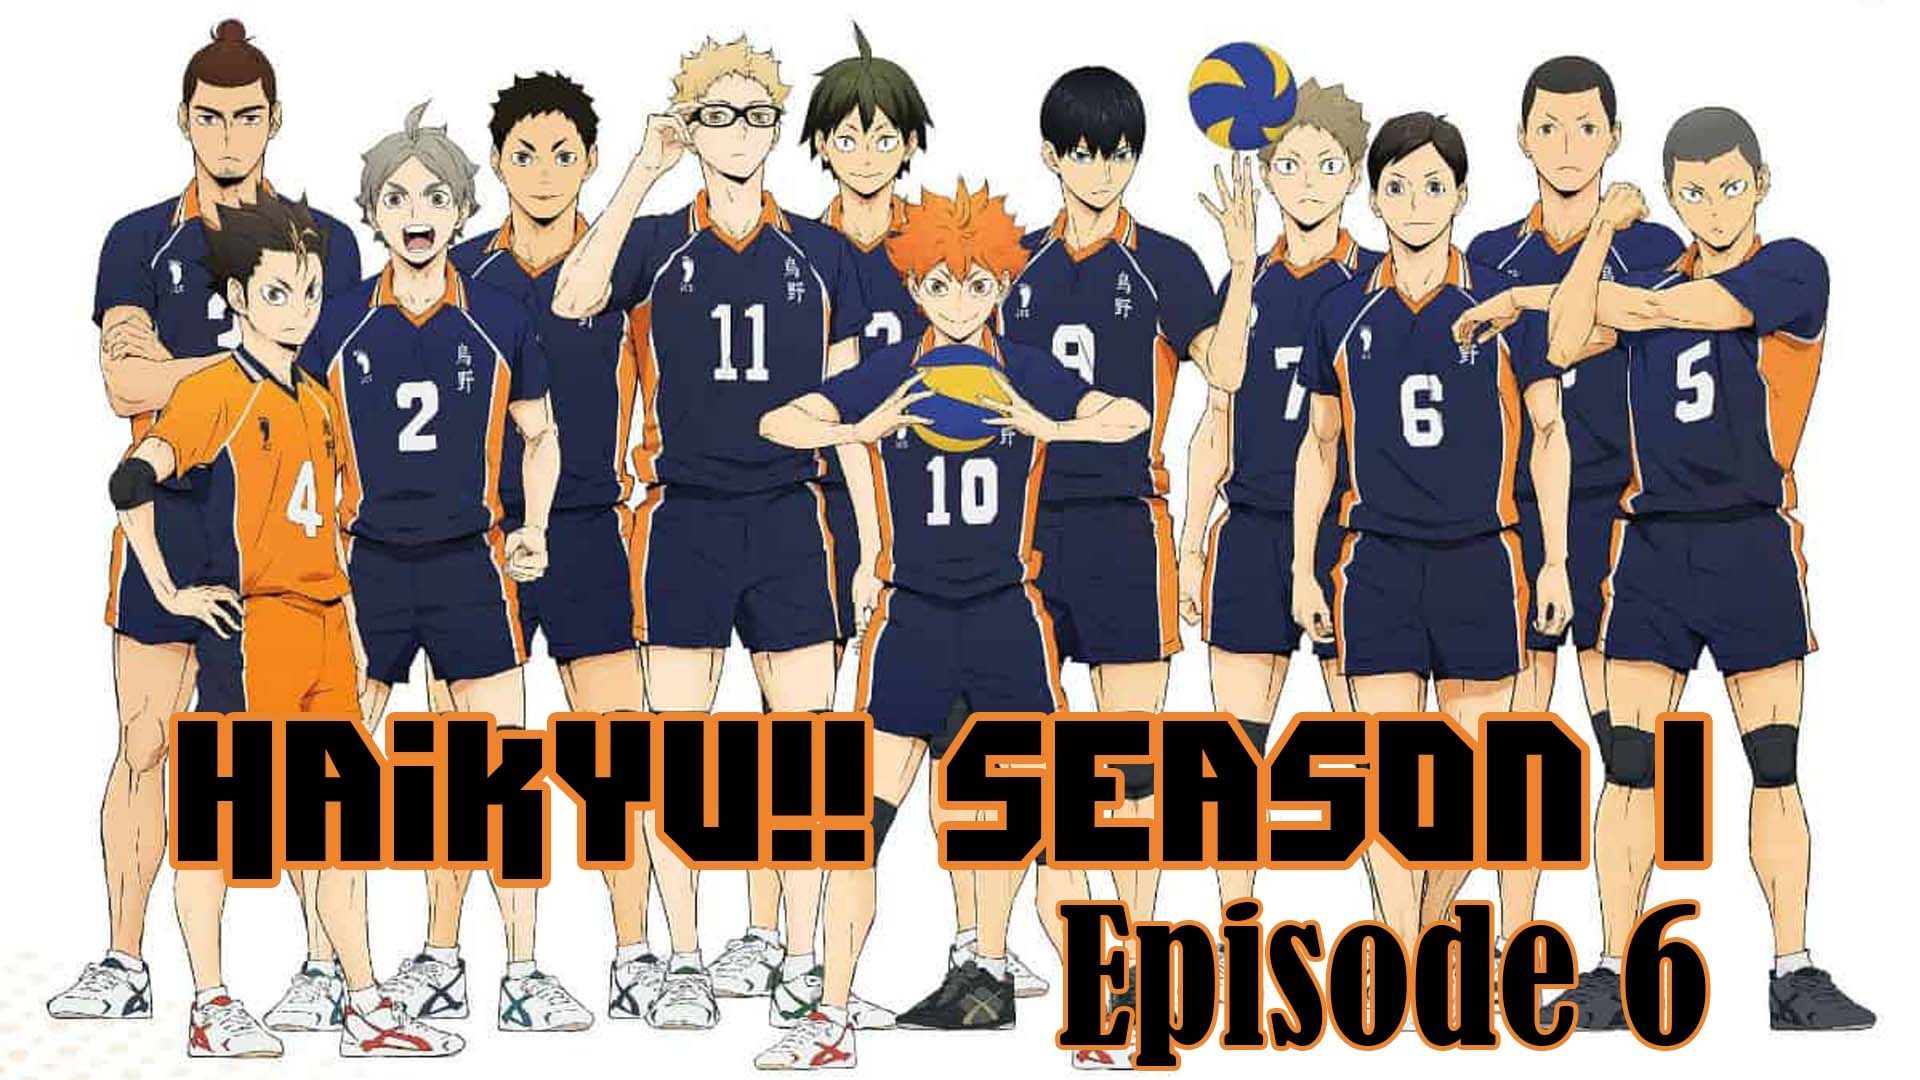 Watch Haikyu!! season 4 episode 6 streaming online